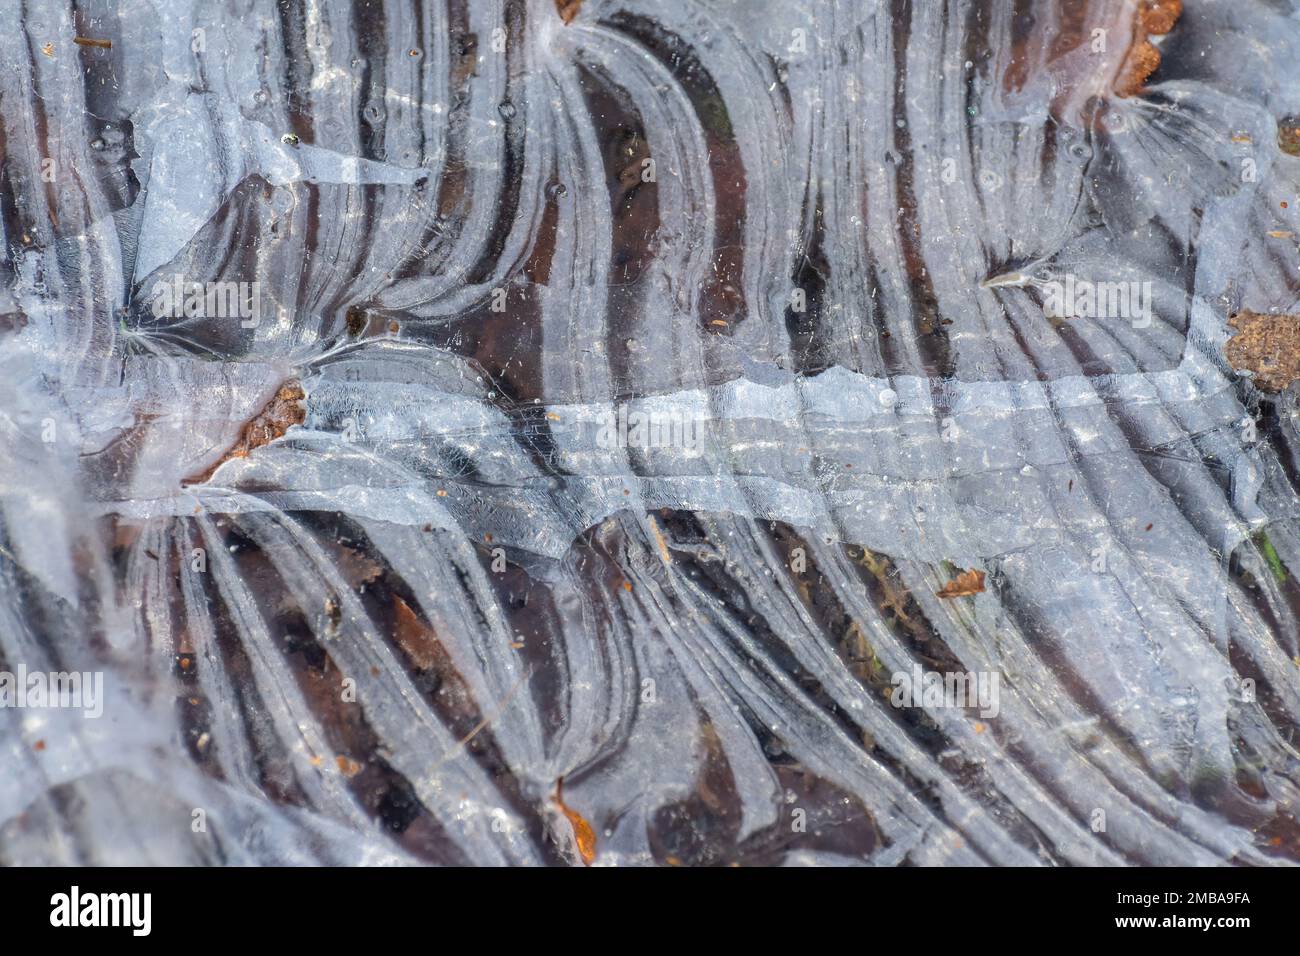 Nahaufnahme von Eismustern oder Eisformationen bei frostigem Wetter in Wäldern, England, Großbritannien Stockfoto